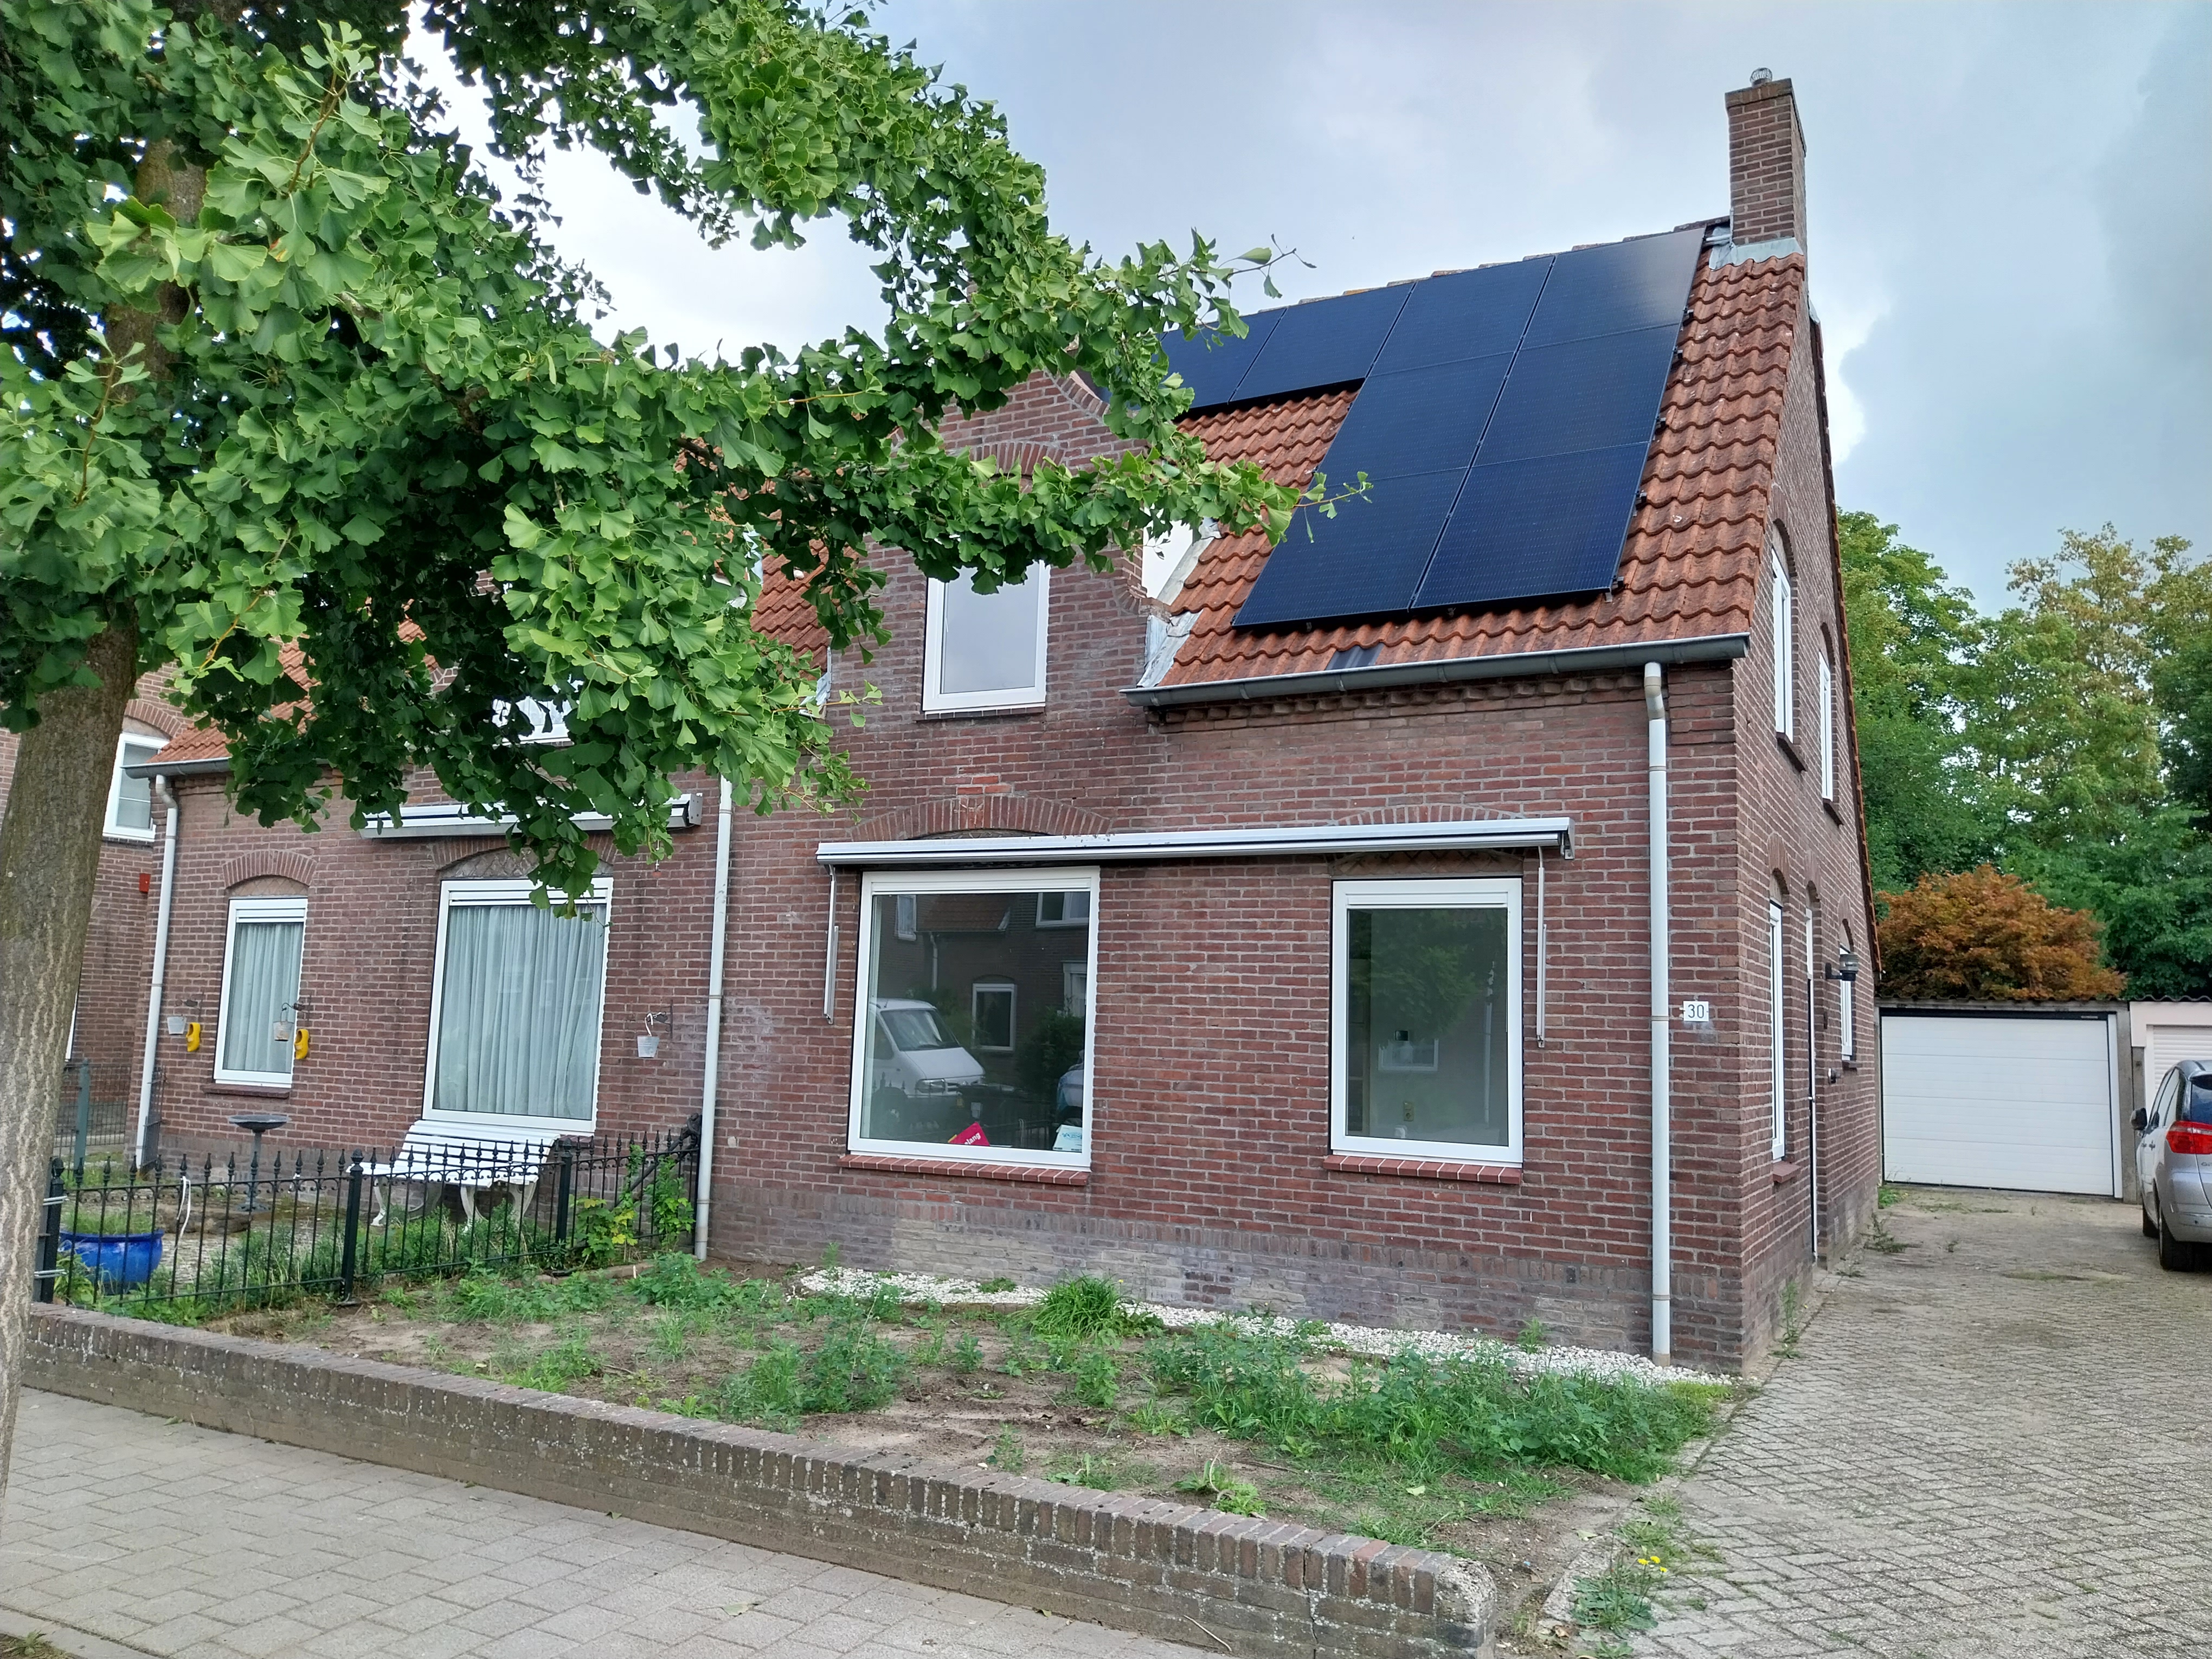 Van Rotselaerstraat 30, 5555 EG Valkenswaard, Nederland